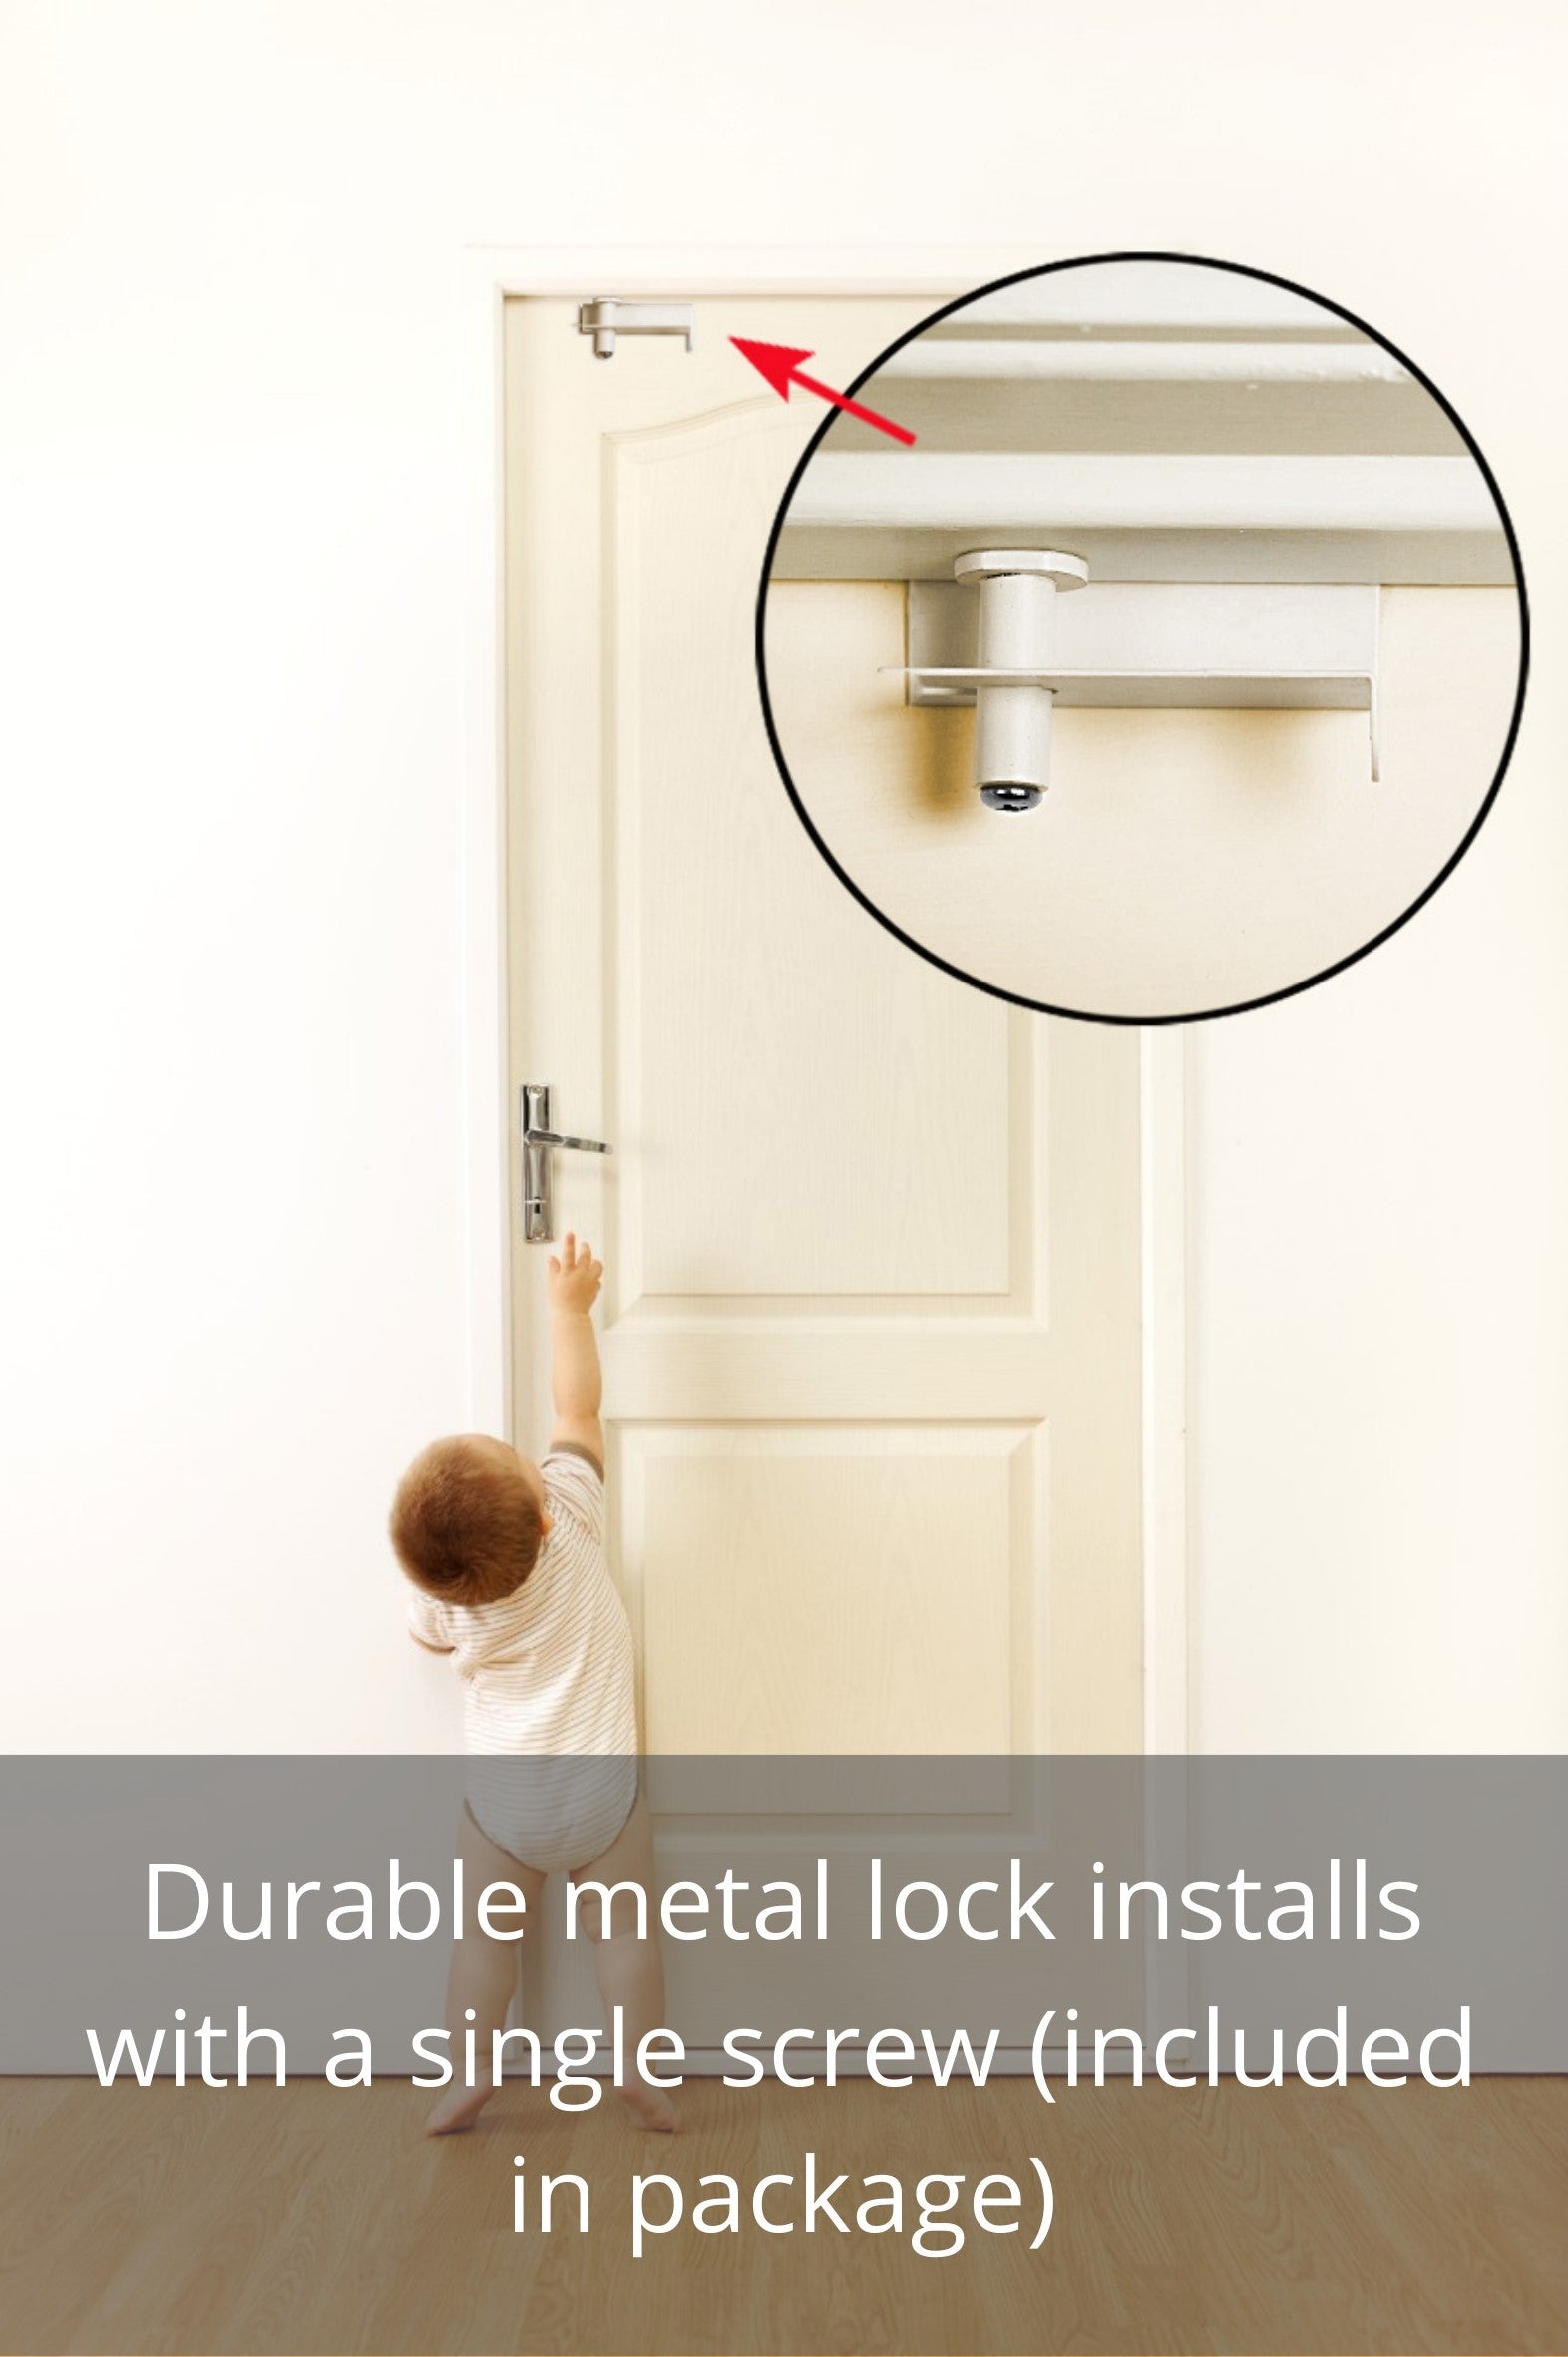 GLIDELOK CHILDPROOF DOOR LOCK - Works on Doors w/ Levers or Knobs